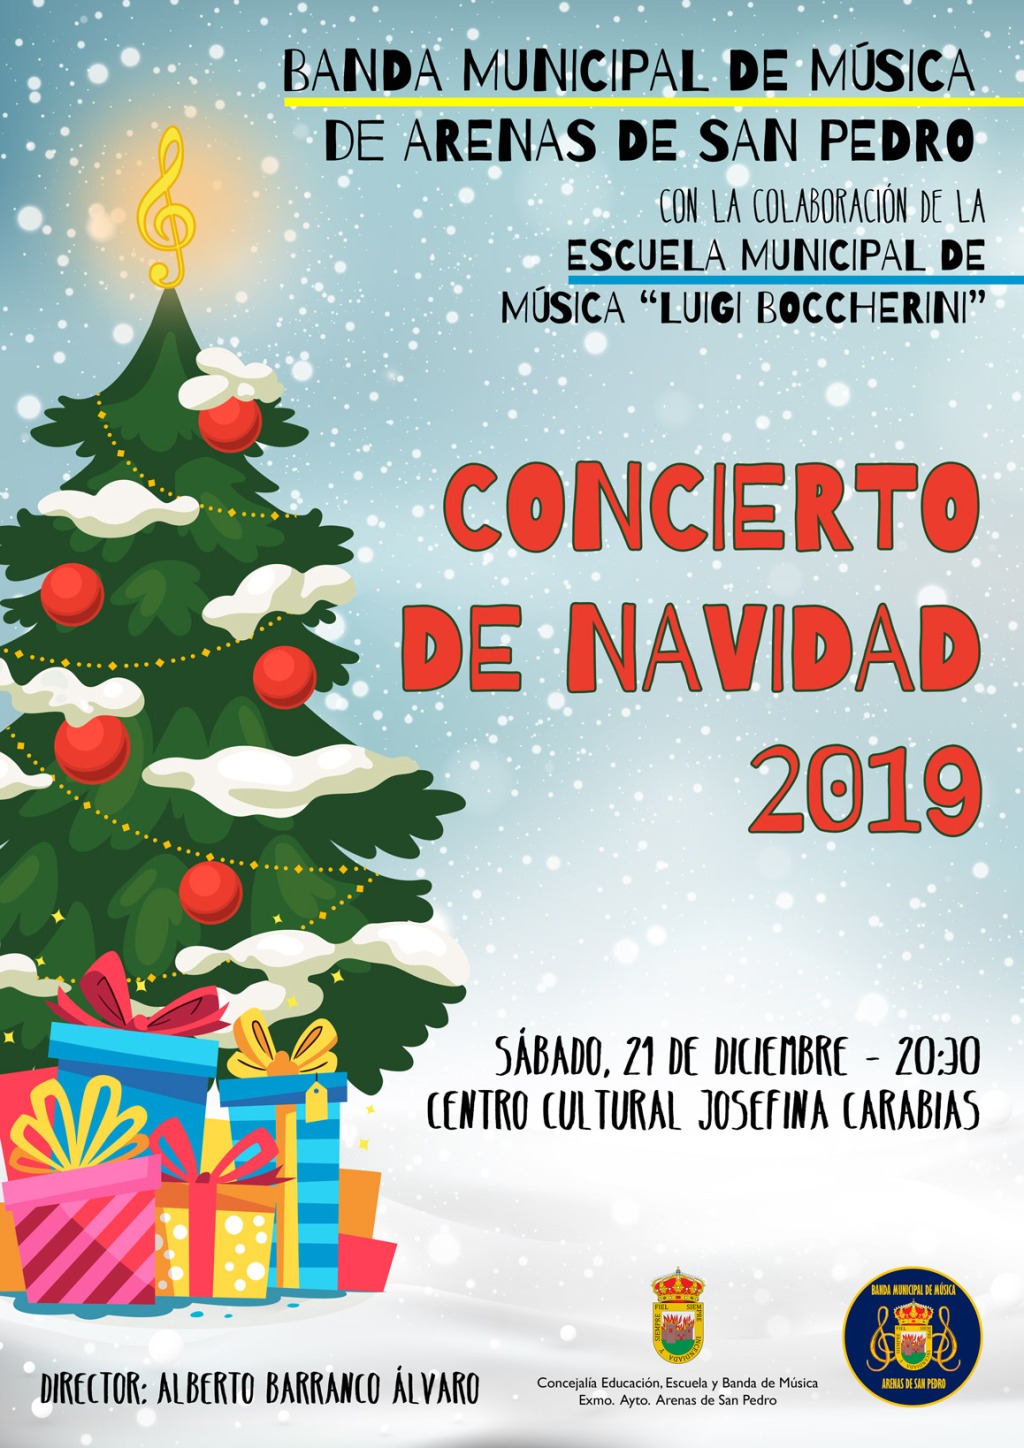 21 Dic: Concierto de Navidad de la Banda Municipal de Música de #ArenasDeSanPedro